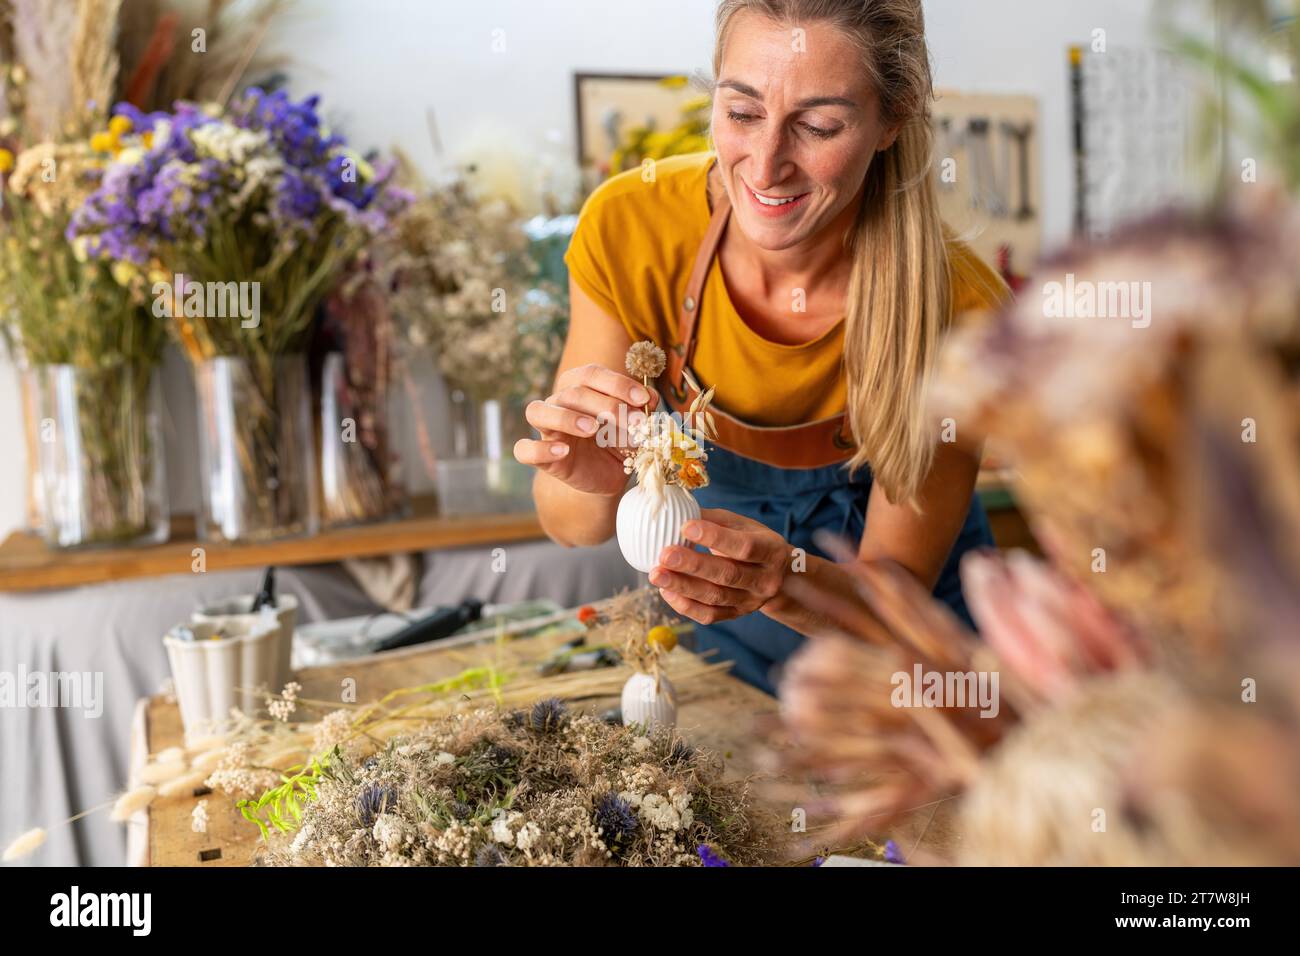 Floristin arrangiert eine kleine weiße Vase mit getrockneten Blumen in einer hellen Werkstatt Stockfoto